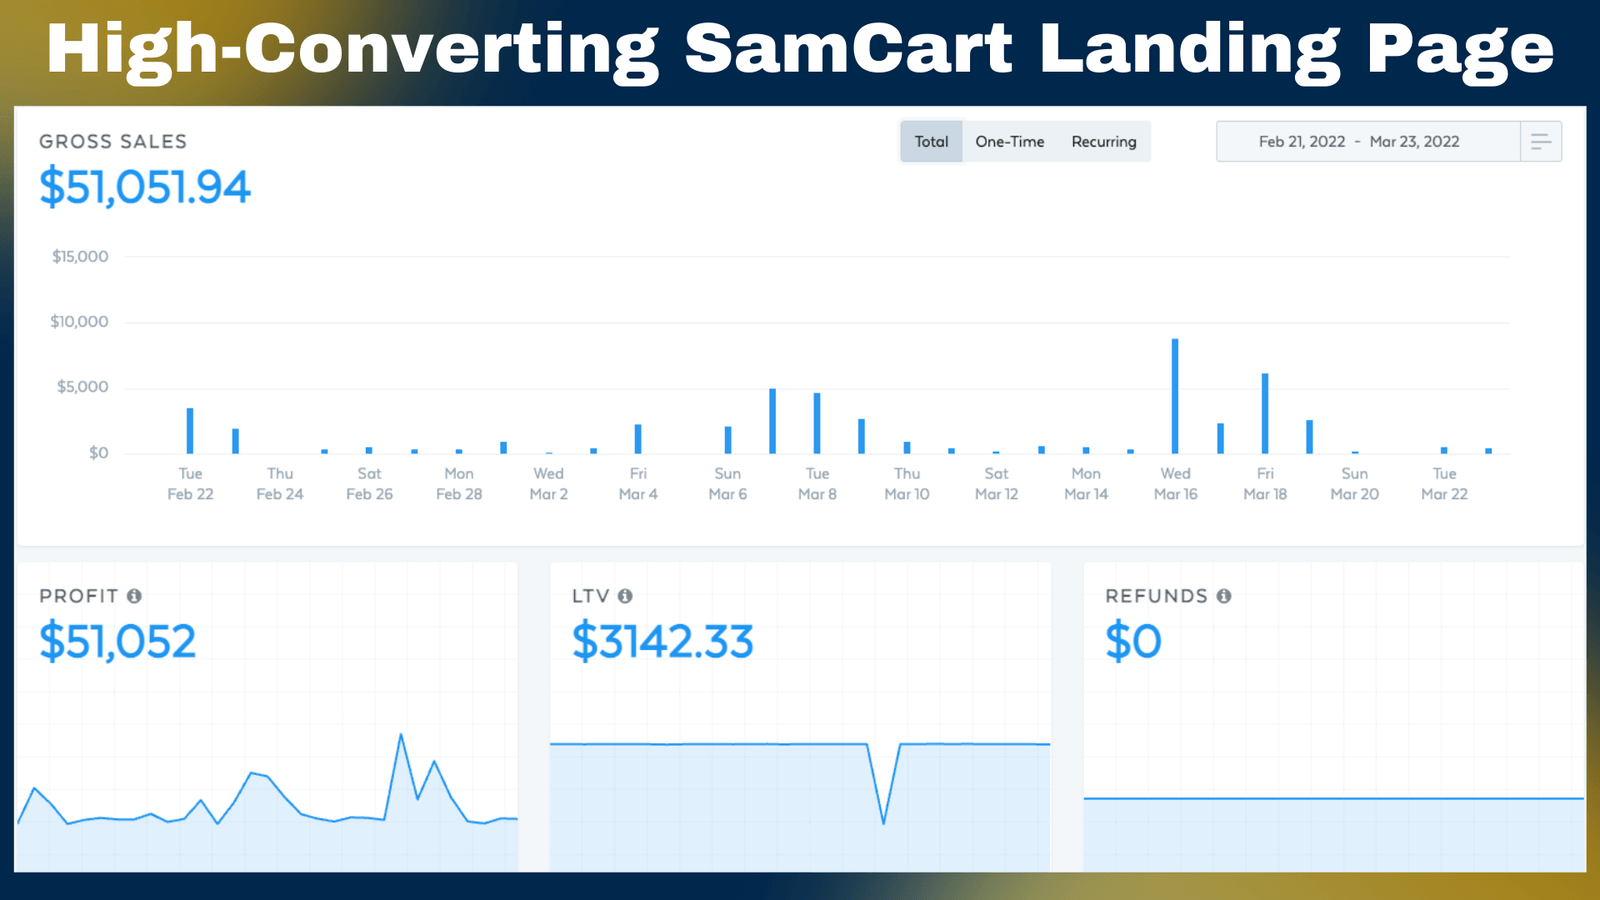 High converting samcart landing page